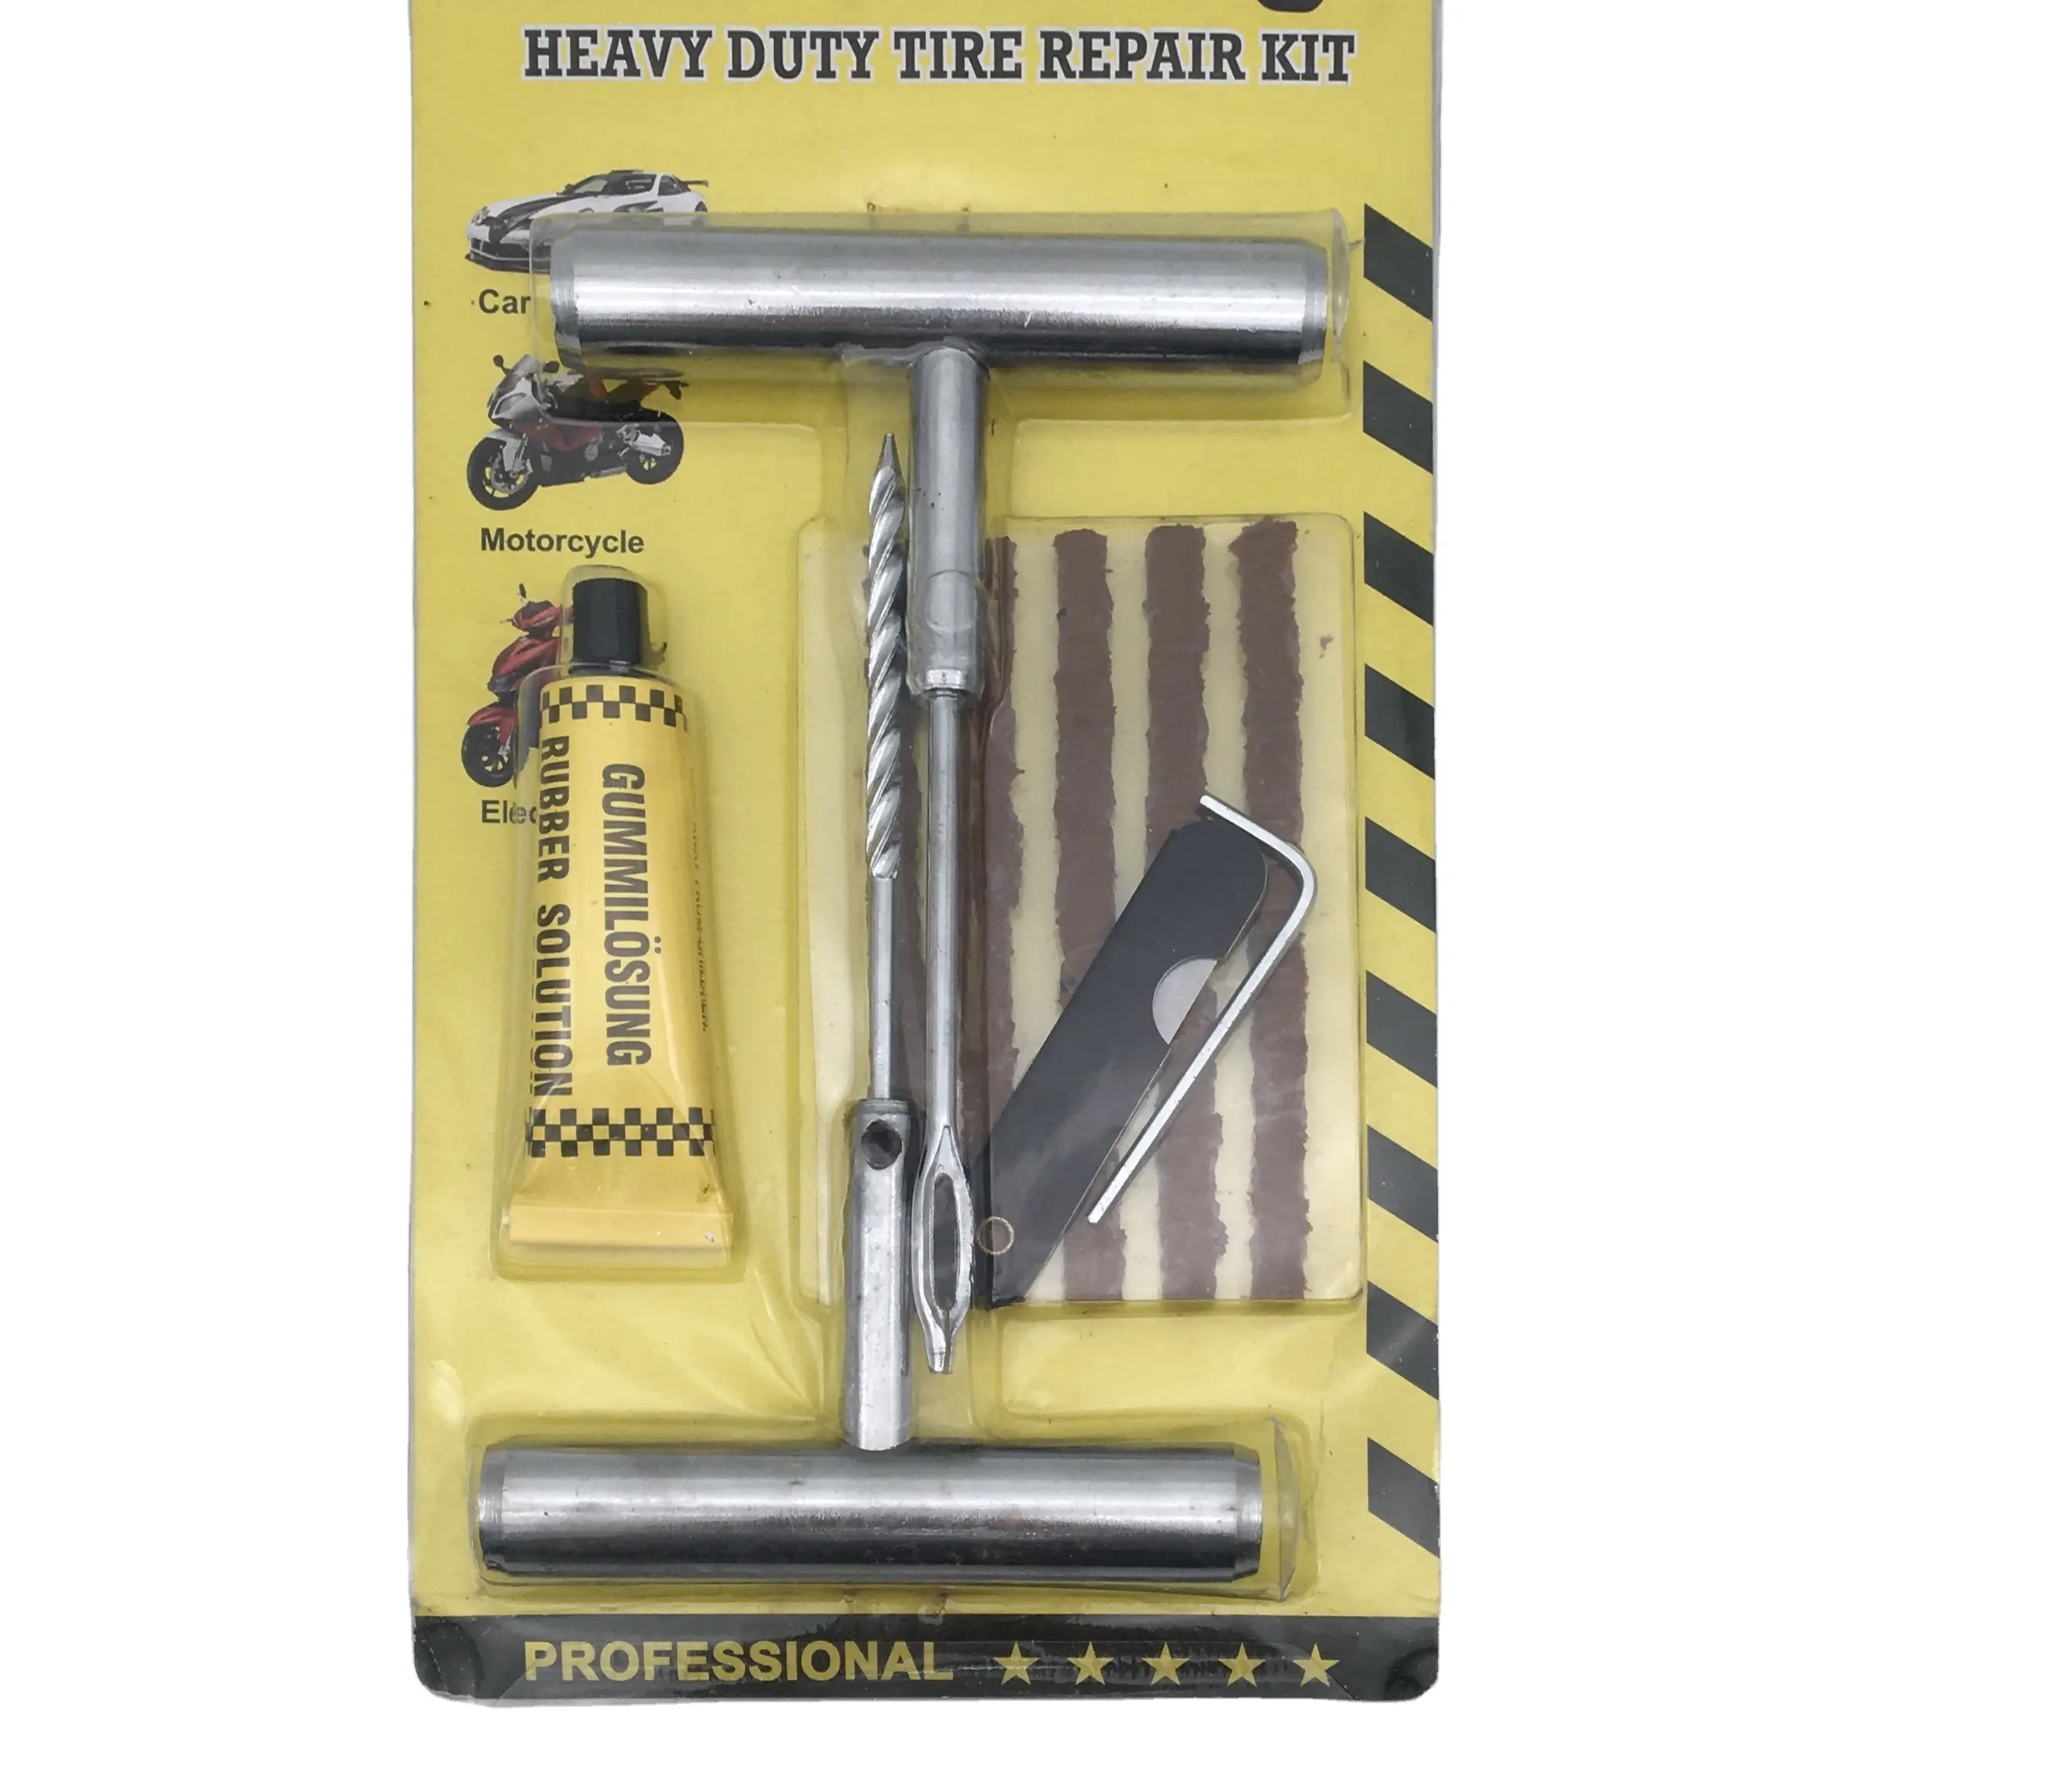 Heavy duty pneumatico kit di riparazione strumenti di riparazione pneumatici kit di riparazione